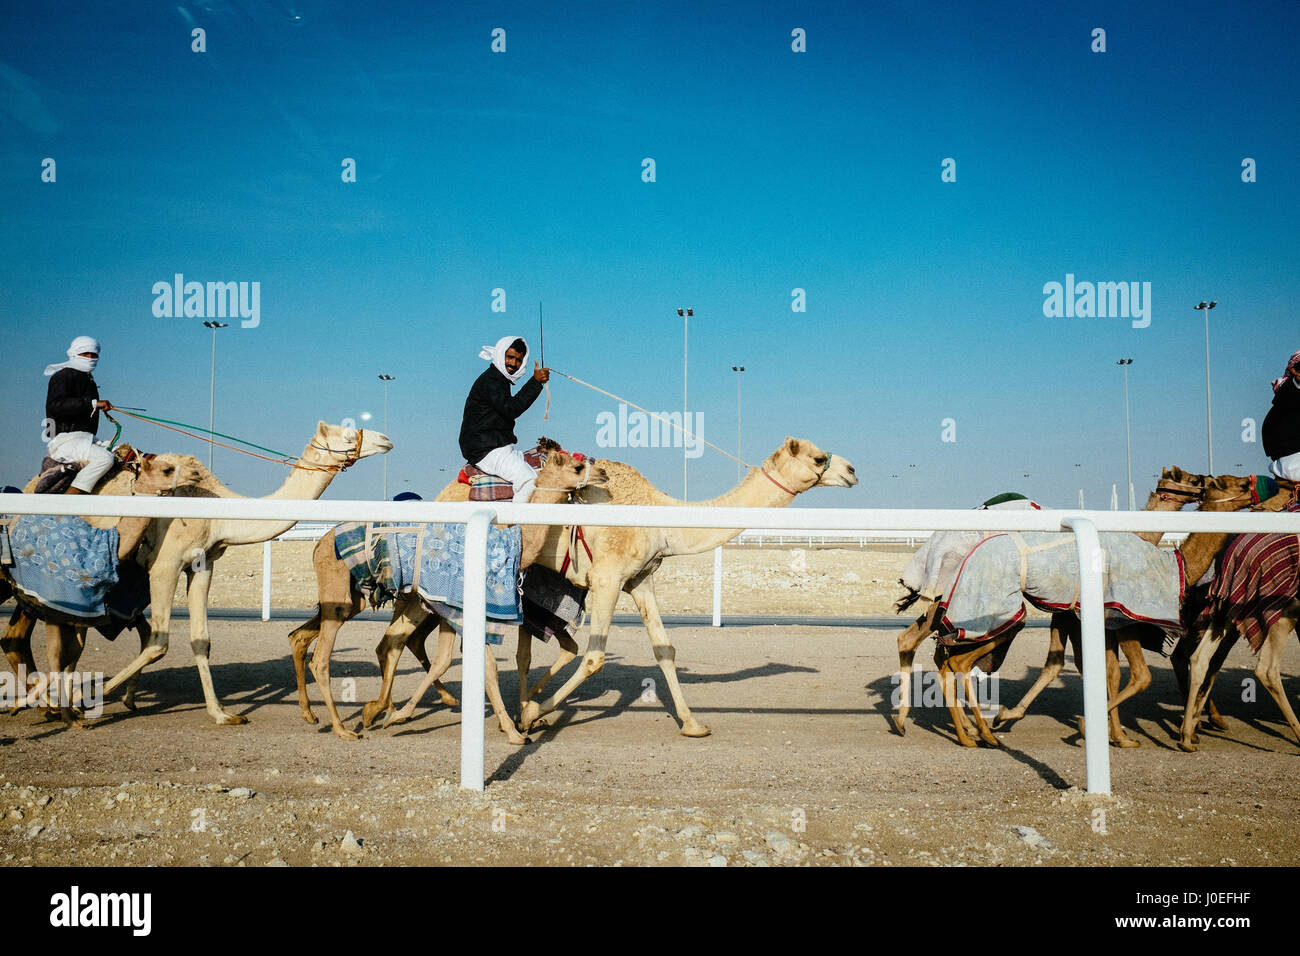 Jockey de chameau présente le Thumbs up sign du dos de son chameau à l'Camel Race Track à Al-Shahaniya au Qatar. Banque D'Images